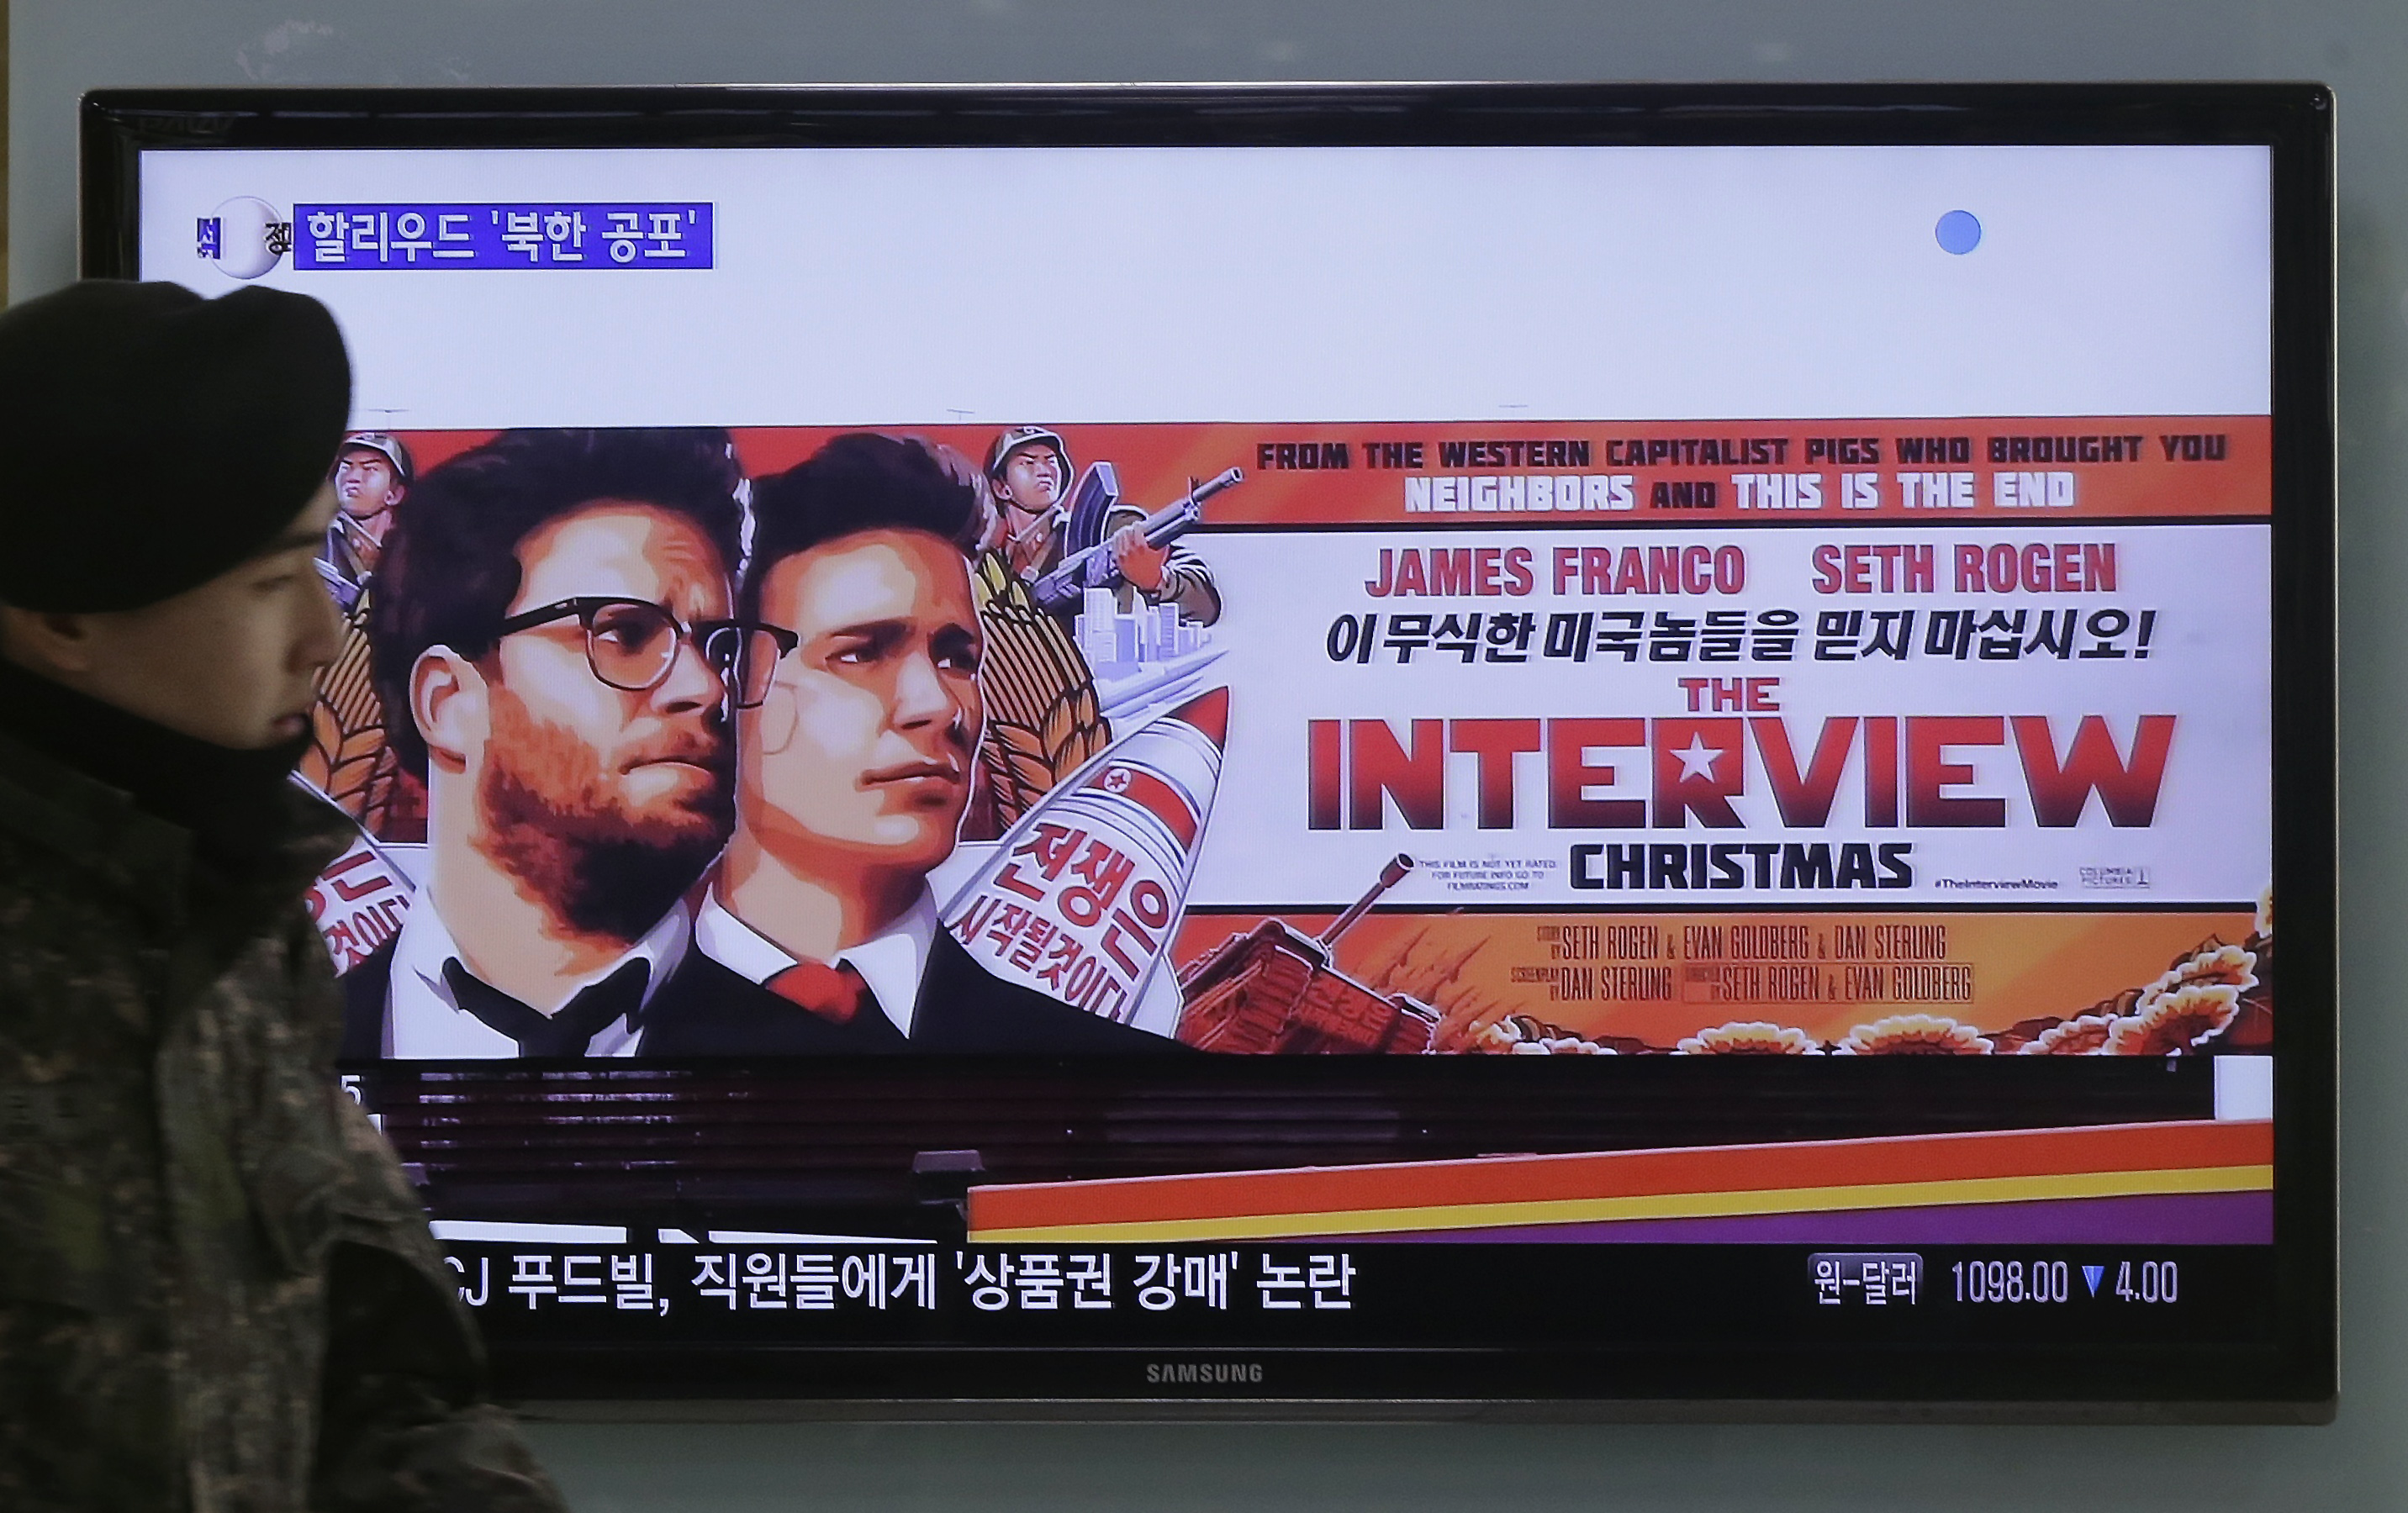 Β.Κορέα: Απειλεί με κυβερνοεπίθεση τις ΗΠΑ για το «Interview»